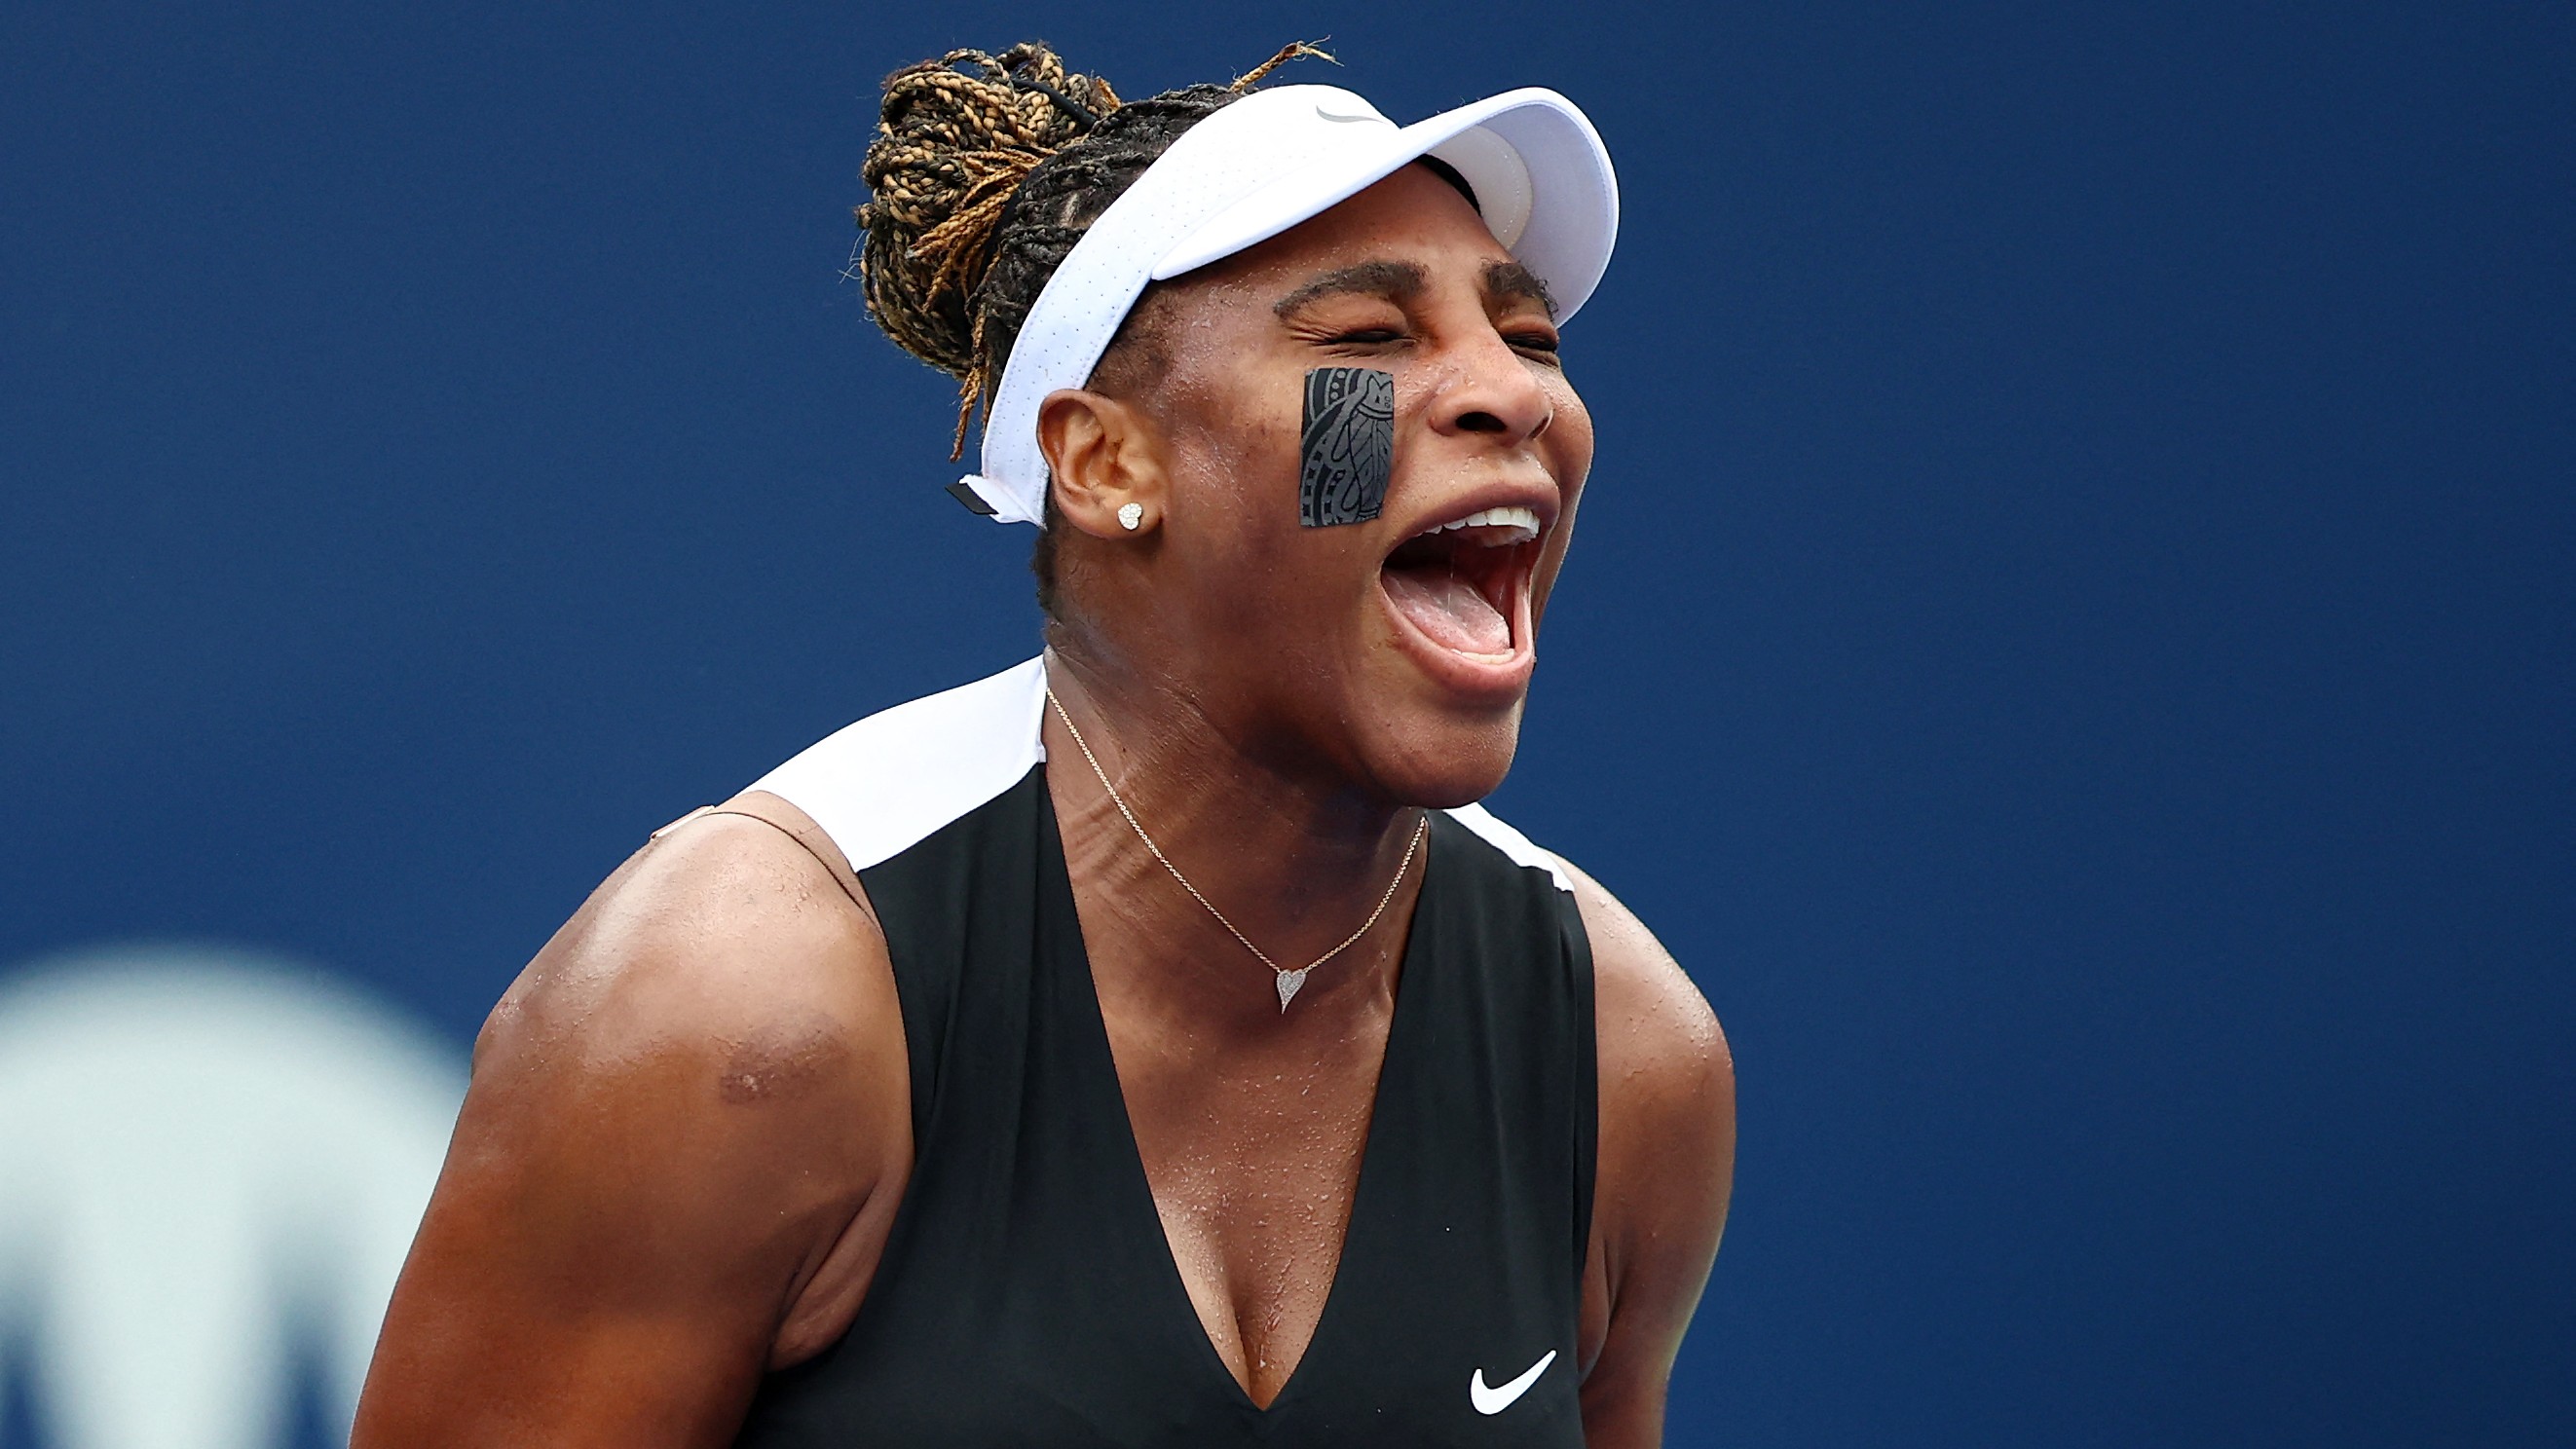 430 nap után nyert ismét Serena Williams